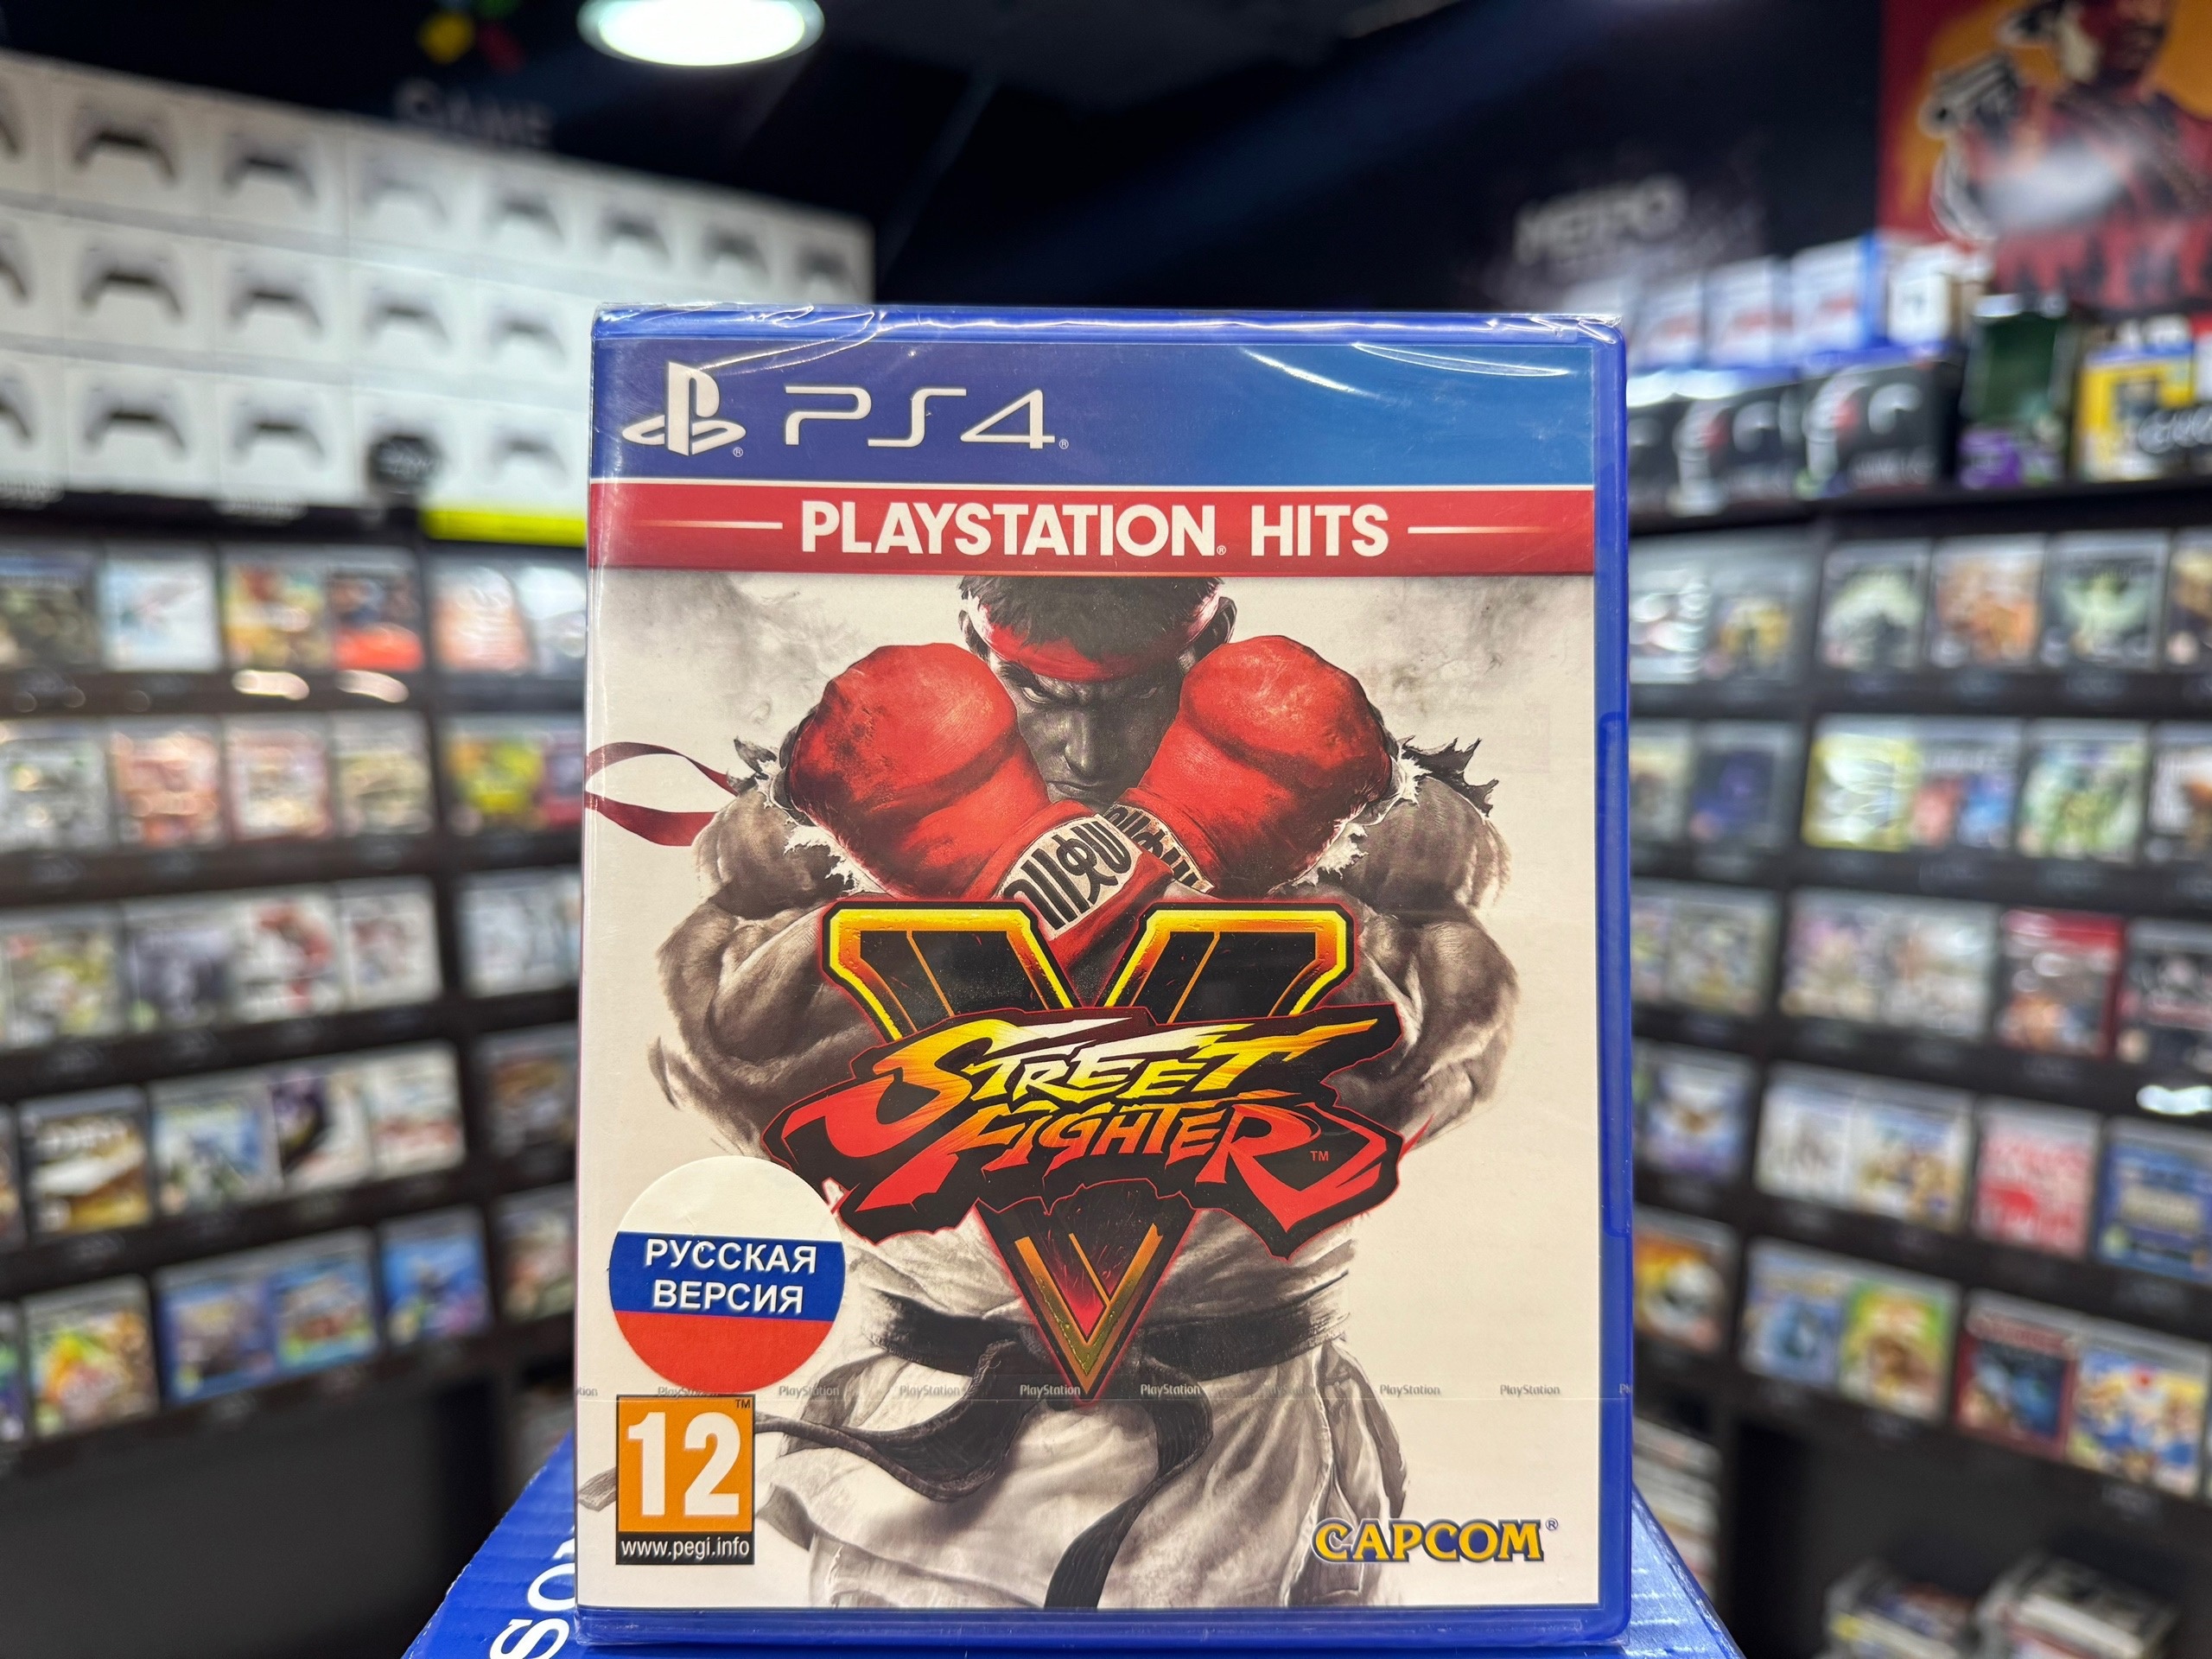 Street Fighter V PS4